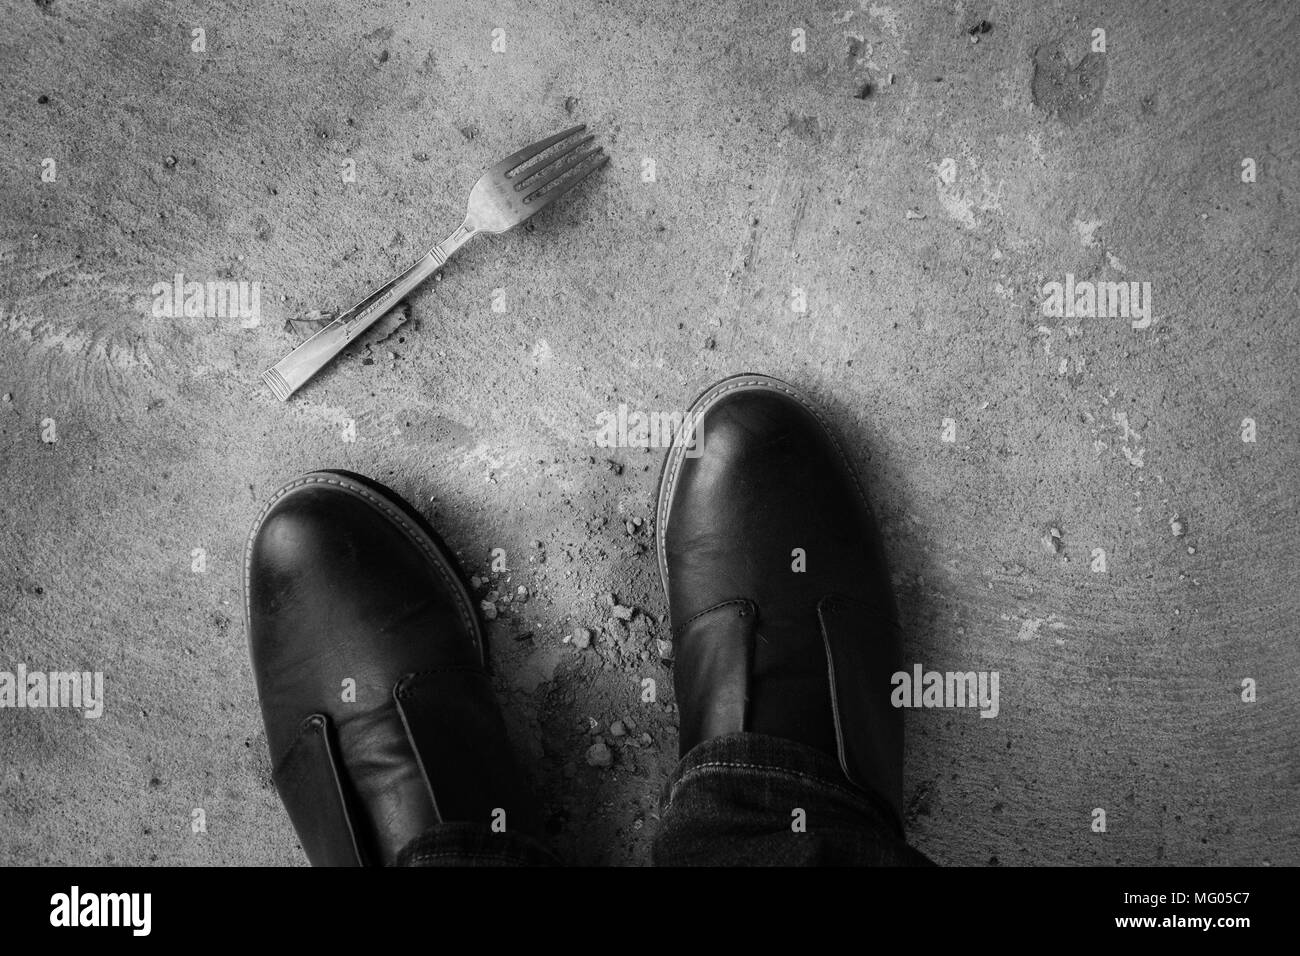 Une image en noir et blanc d'une fourchette sur le sol près de la plante des pieds Banque D'Images